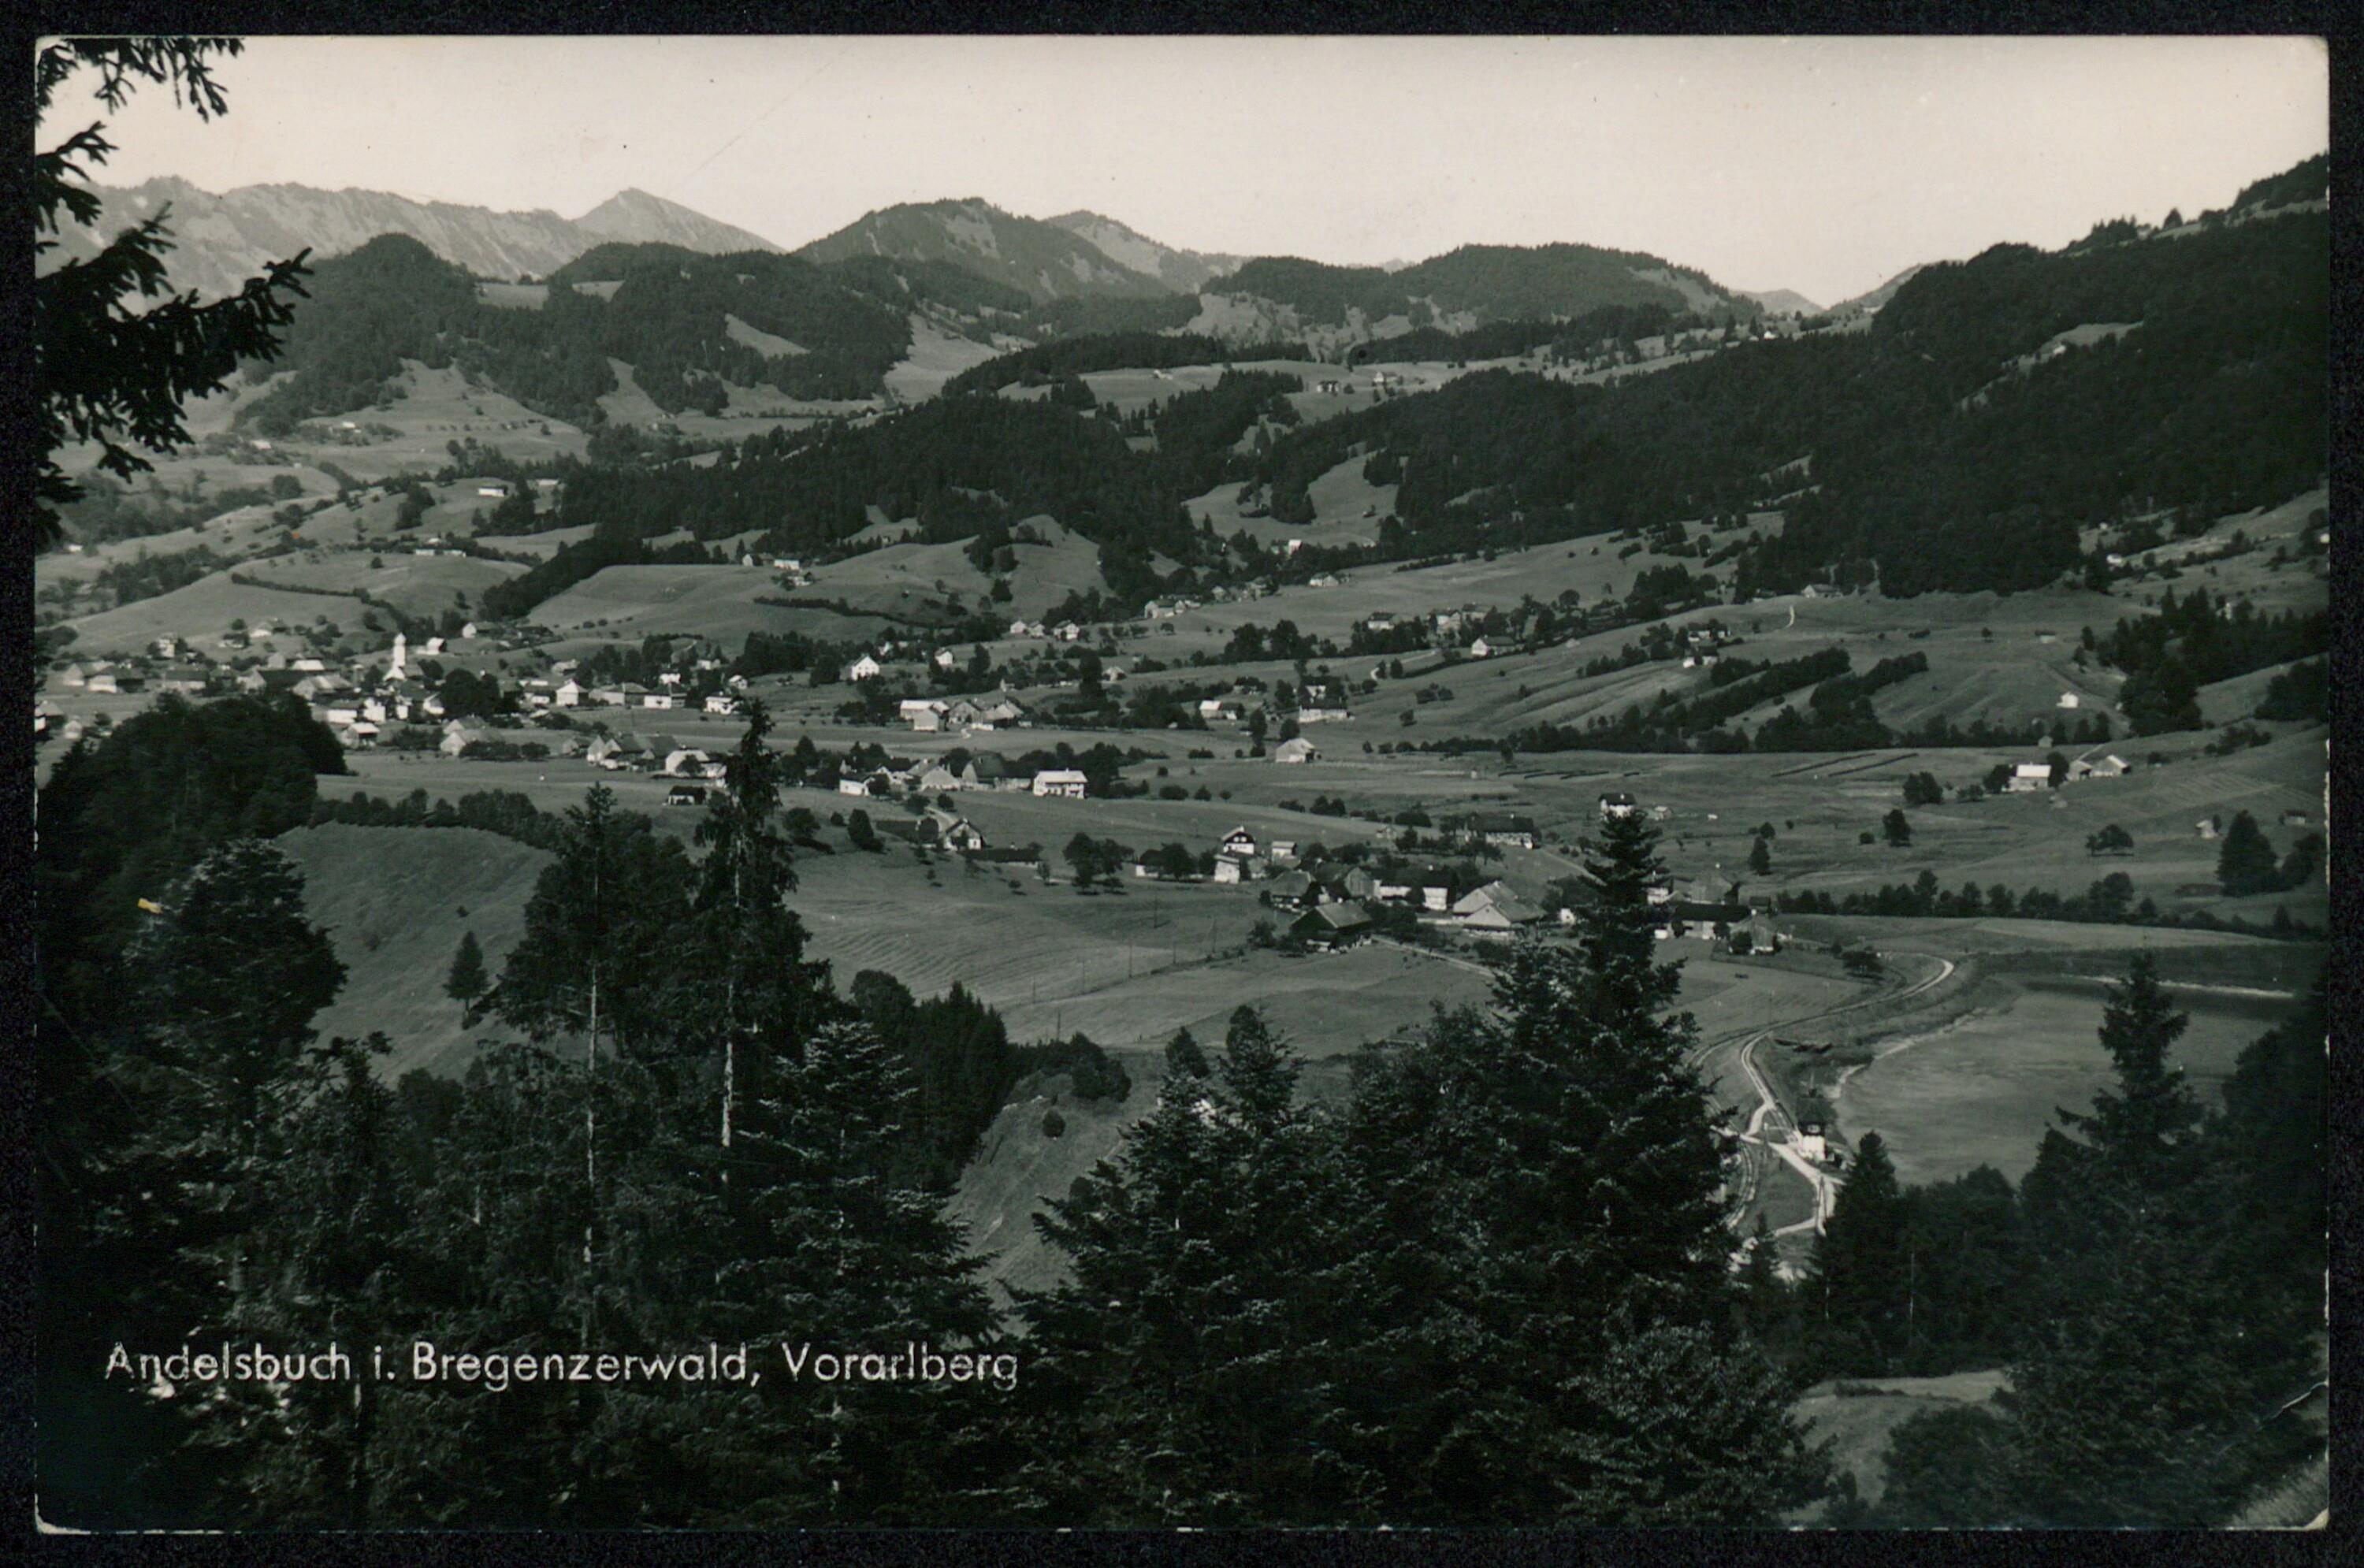 Andelsbuch i. Bregenzerwald, Vorarlberg></div>


    <hr>
    <div class=